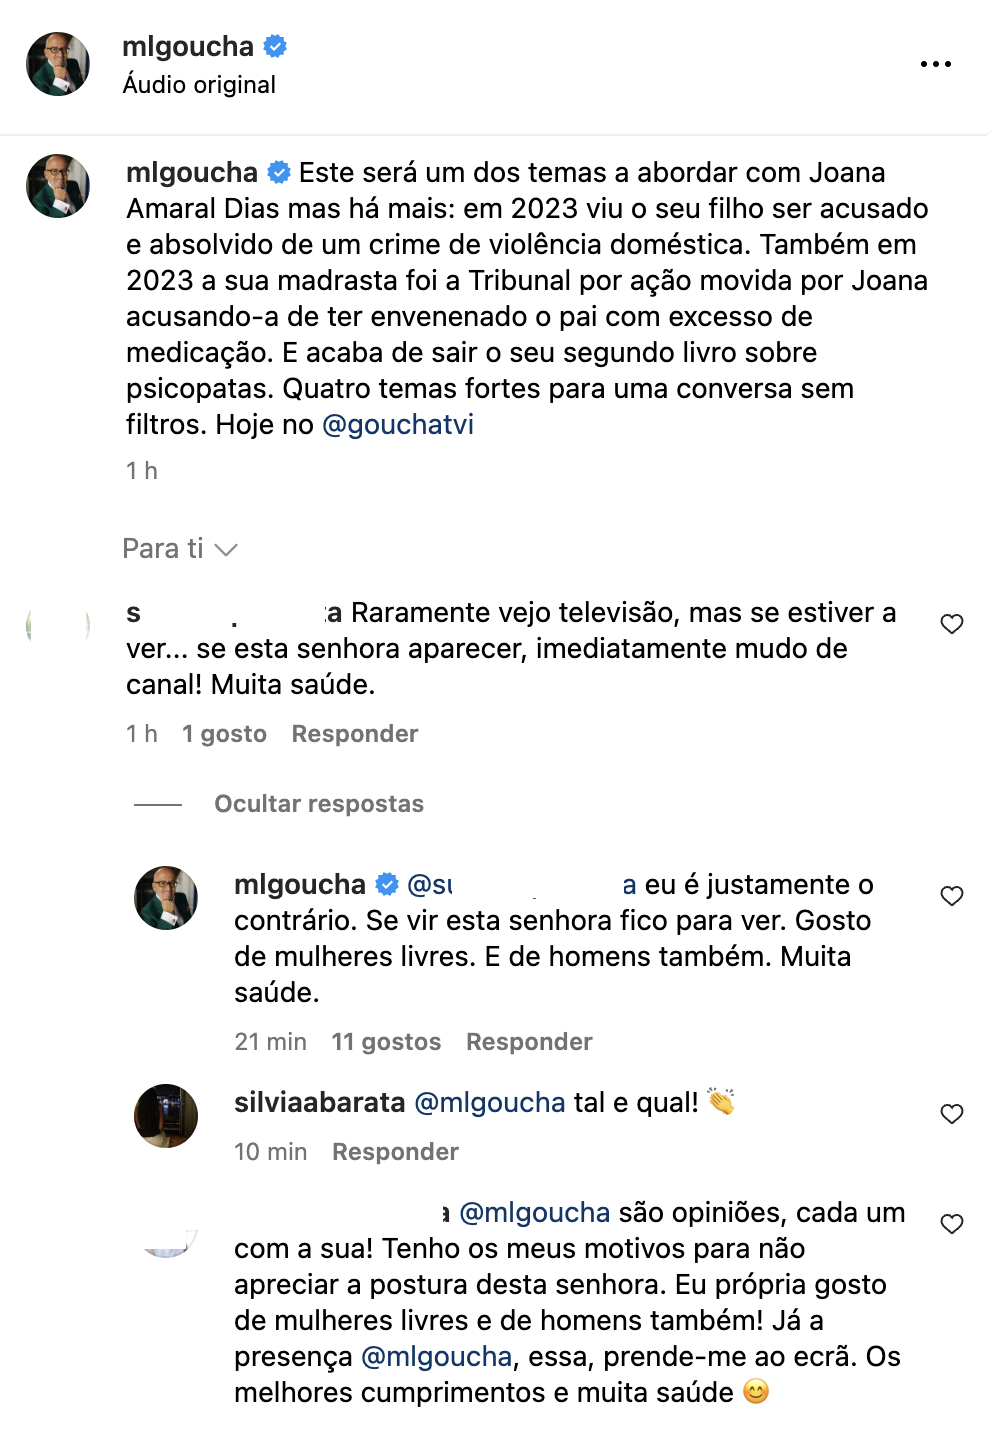 Manuel Luís Goucha responde a crítica sobre Joana Amaral Dias: &#8220;Se estiver mudo de canal&#8230;&#8221;